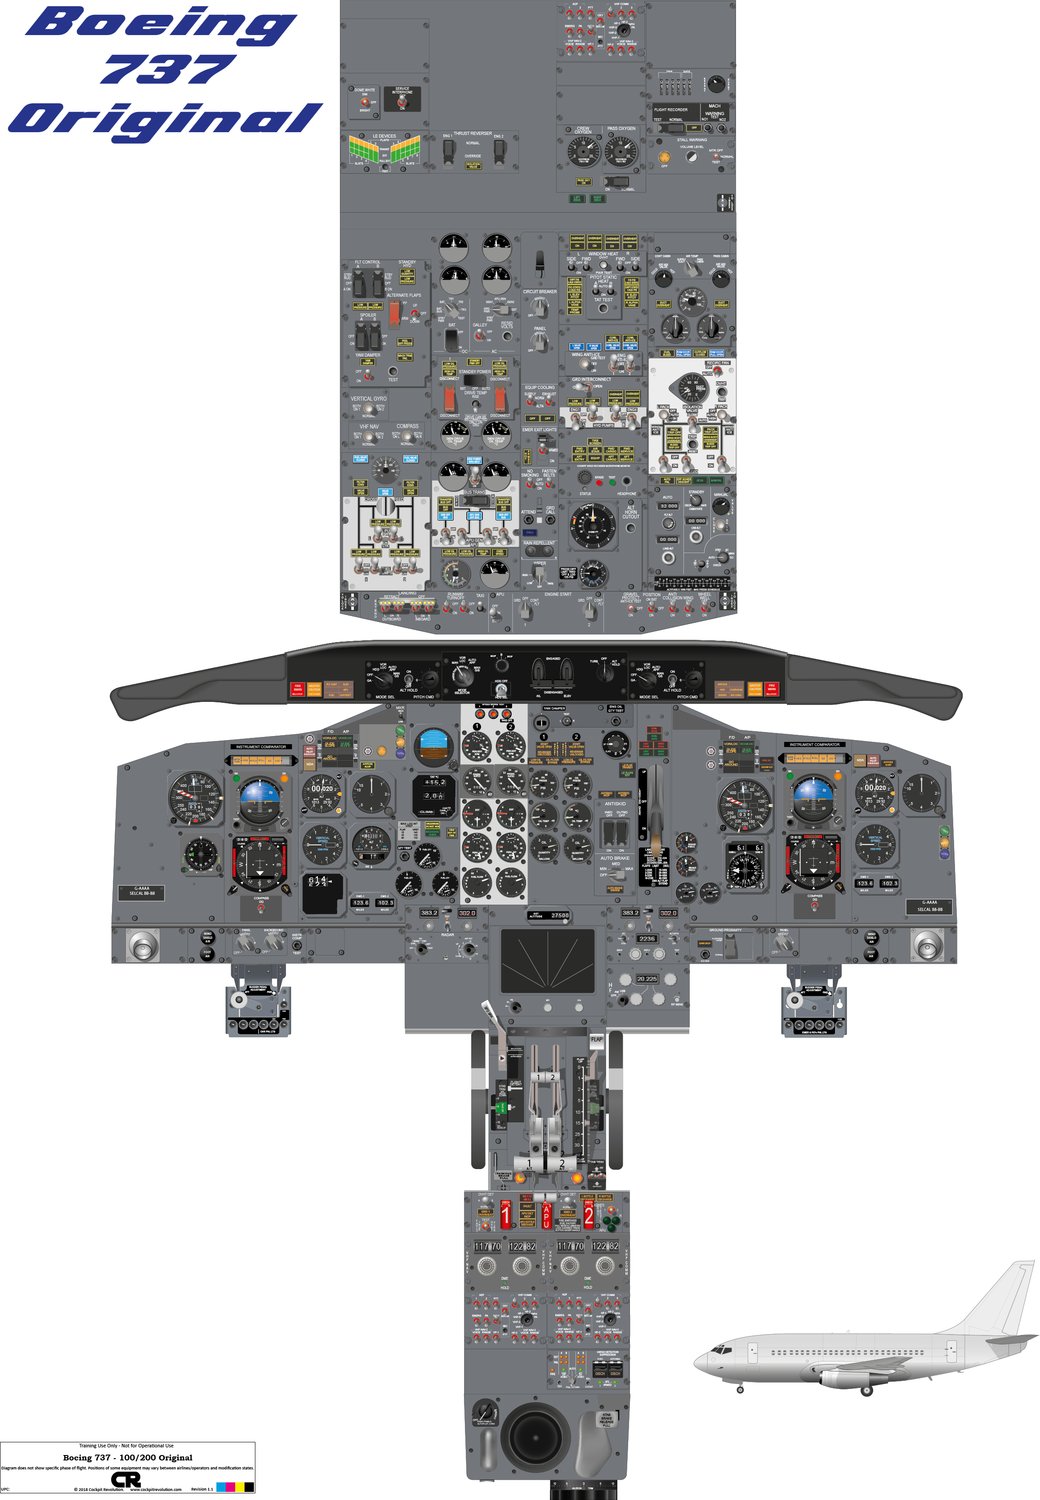 Boeing 737-100/200 "Original" Cockpit Poster - Digital Download